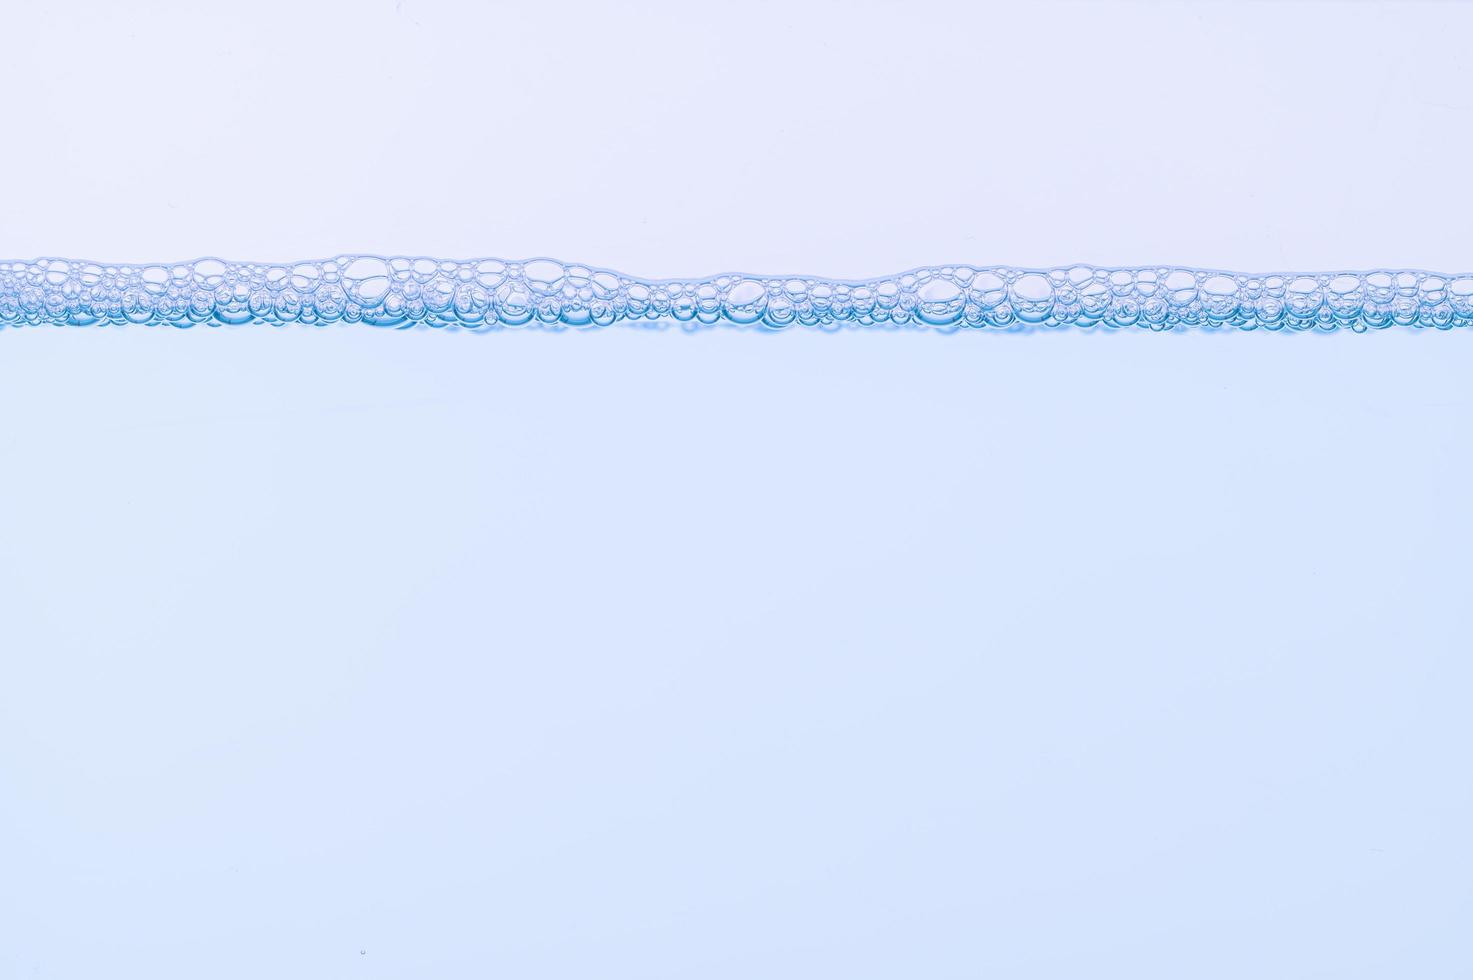 burbujas en la superficie del agua foto